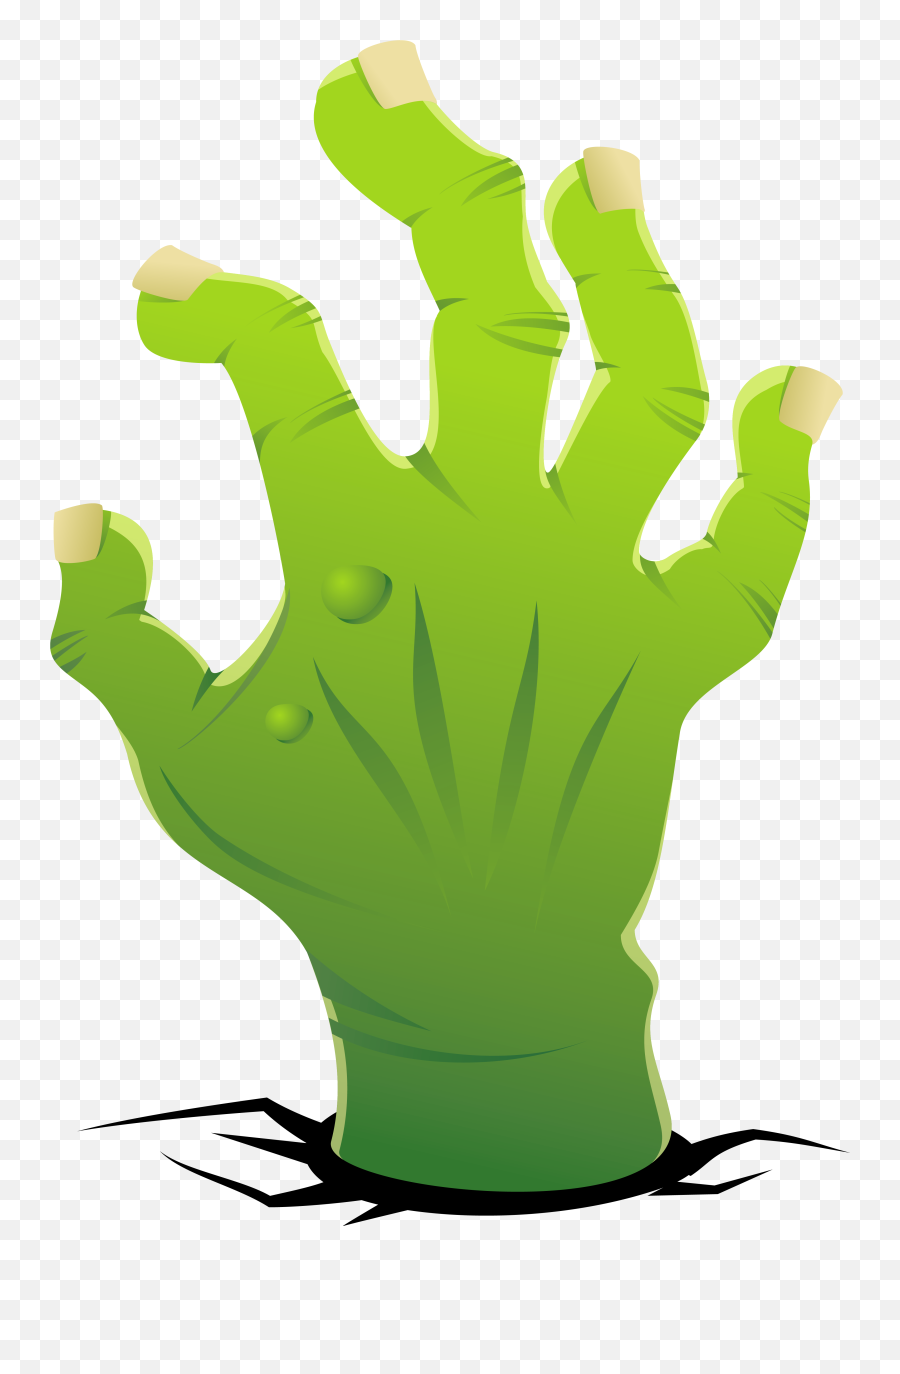 Hands Clipart Transparent Background Hands Transparent - Transparent Background Zombie Hand Clipart Emoji,6 God Hands Emoji